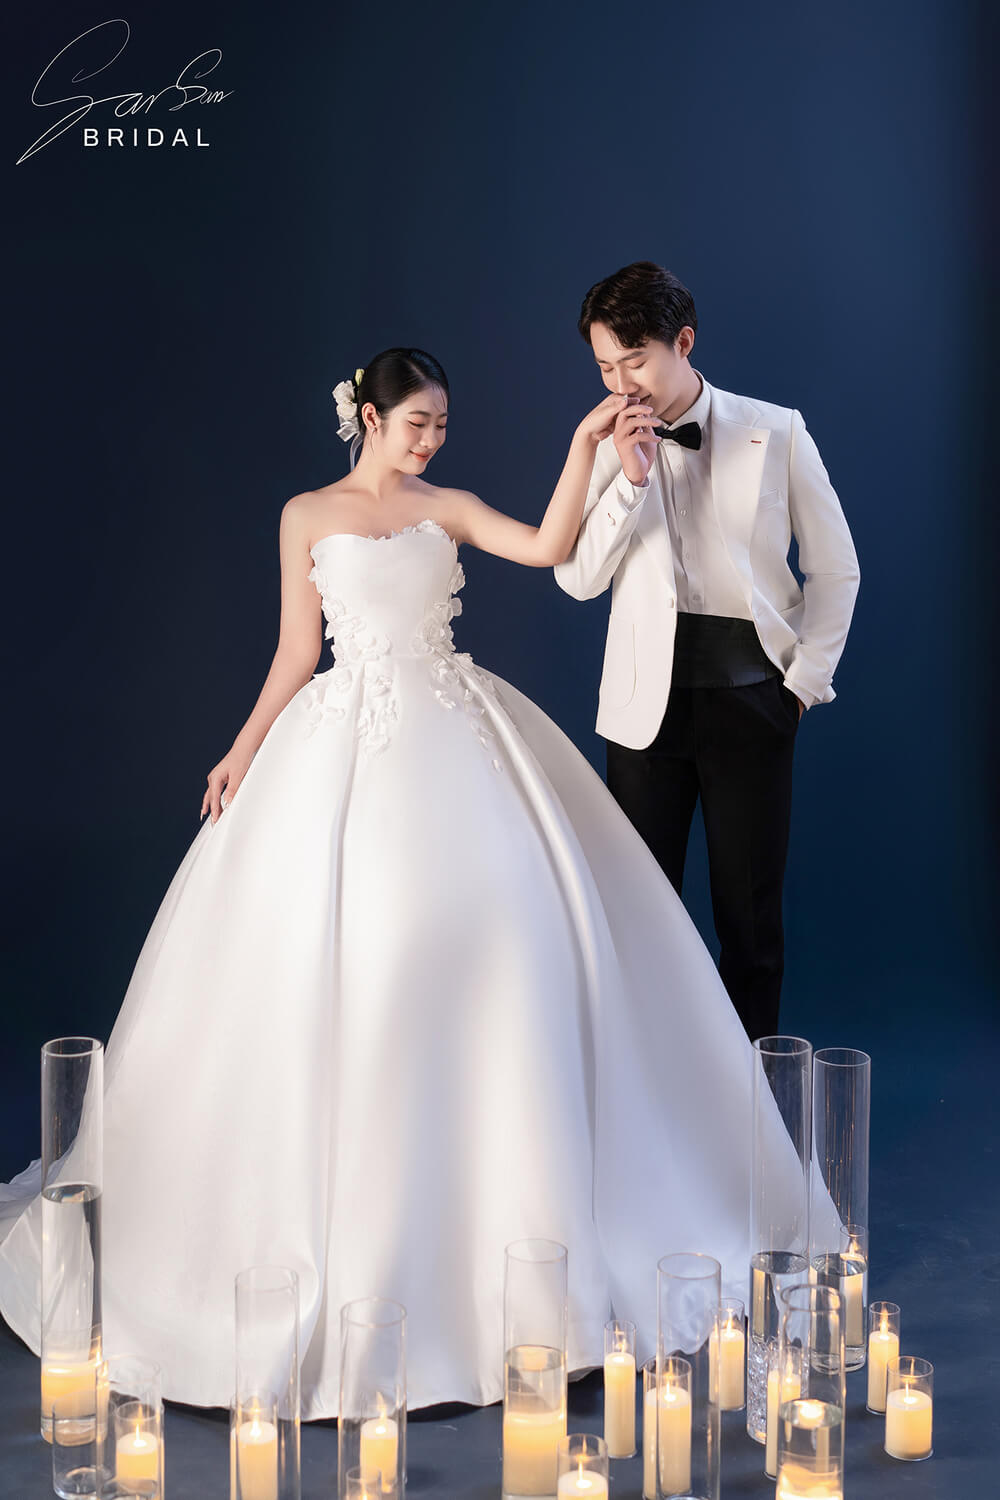 Chụp ảnh cưới kiểu Hàn với phông nền xanh dương